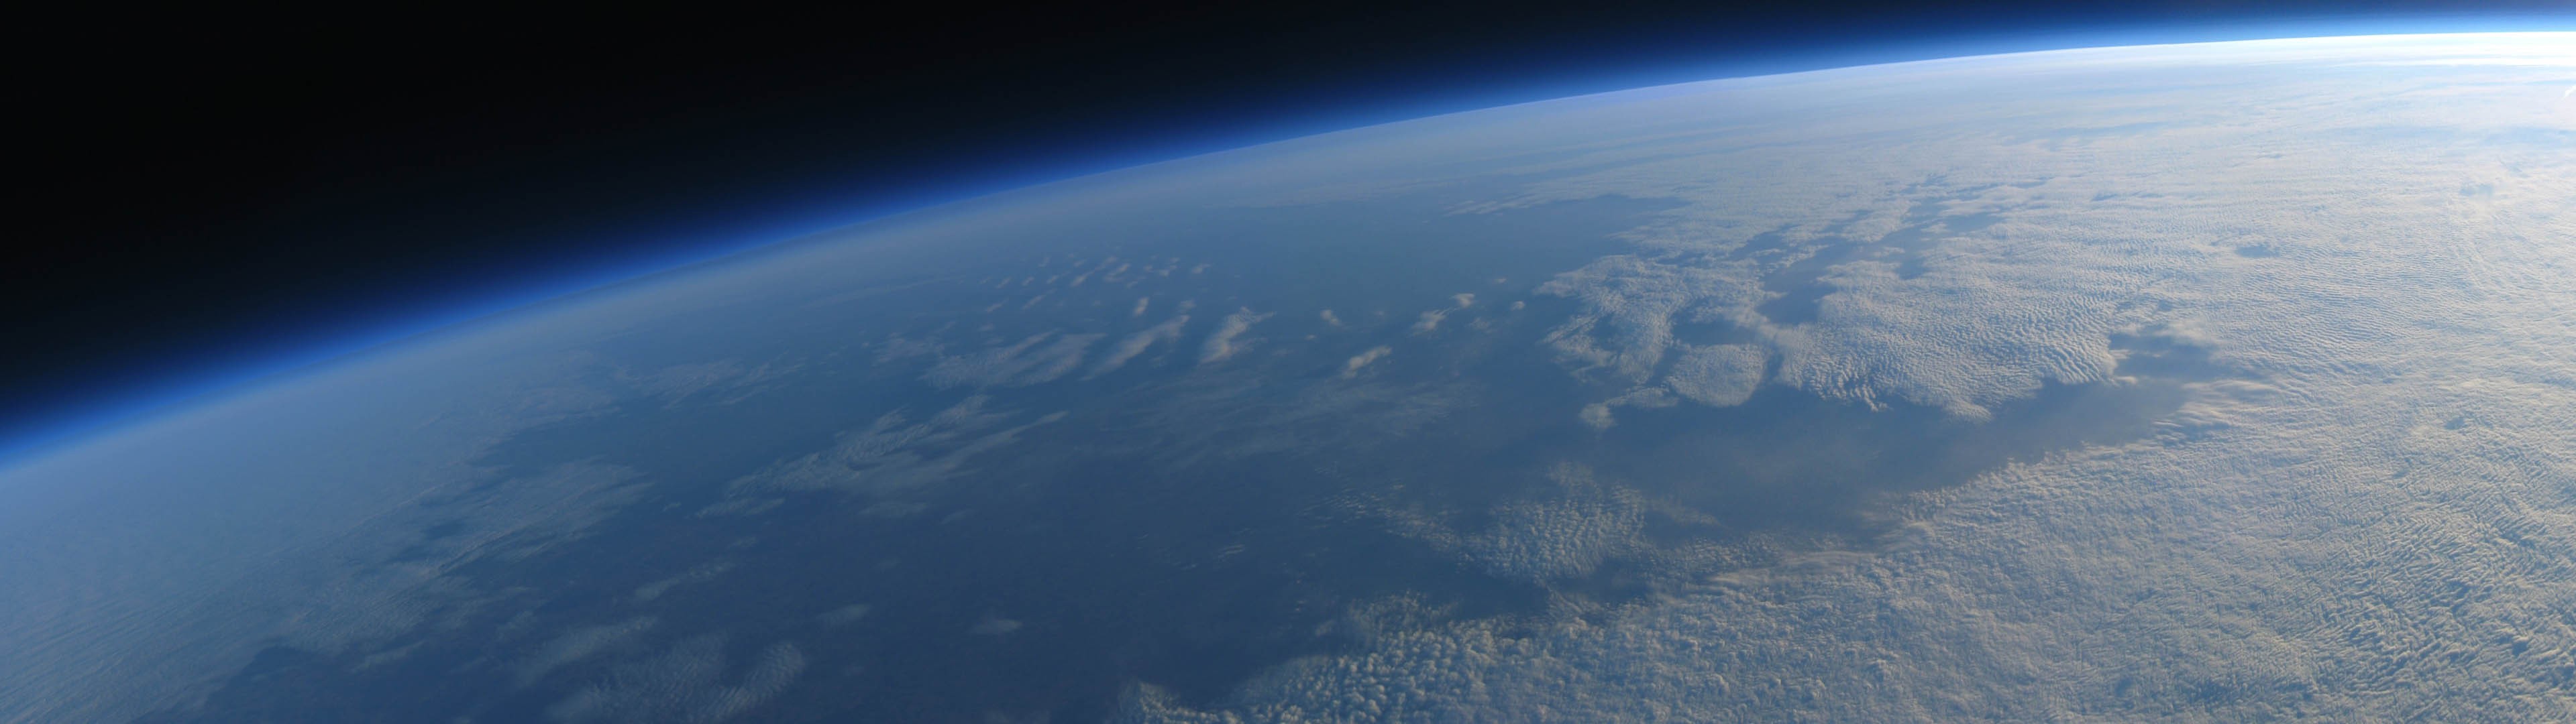 General 3840x1080 multiple display space Earth clouds atmosphere CGI digital art space art fisheye lens planet